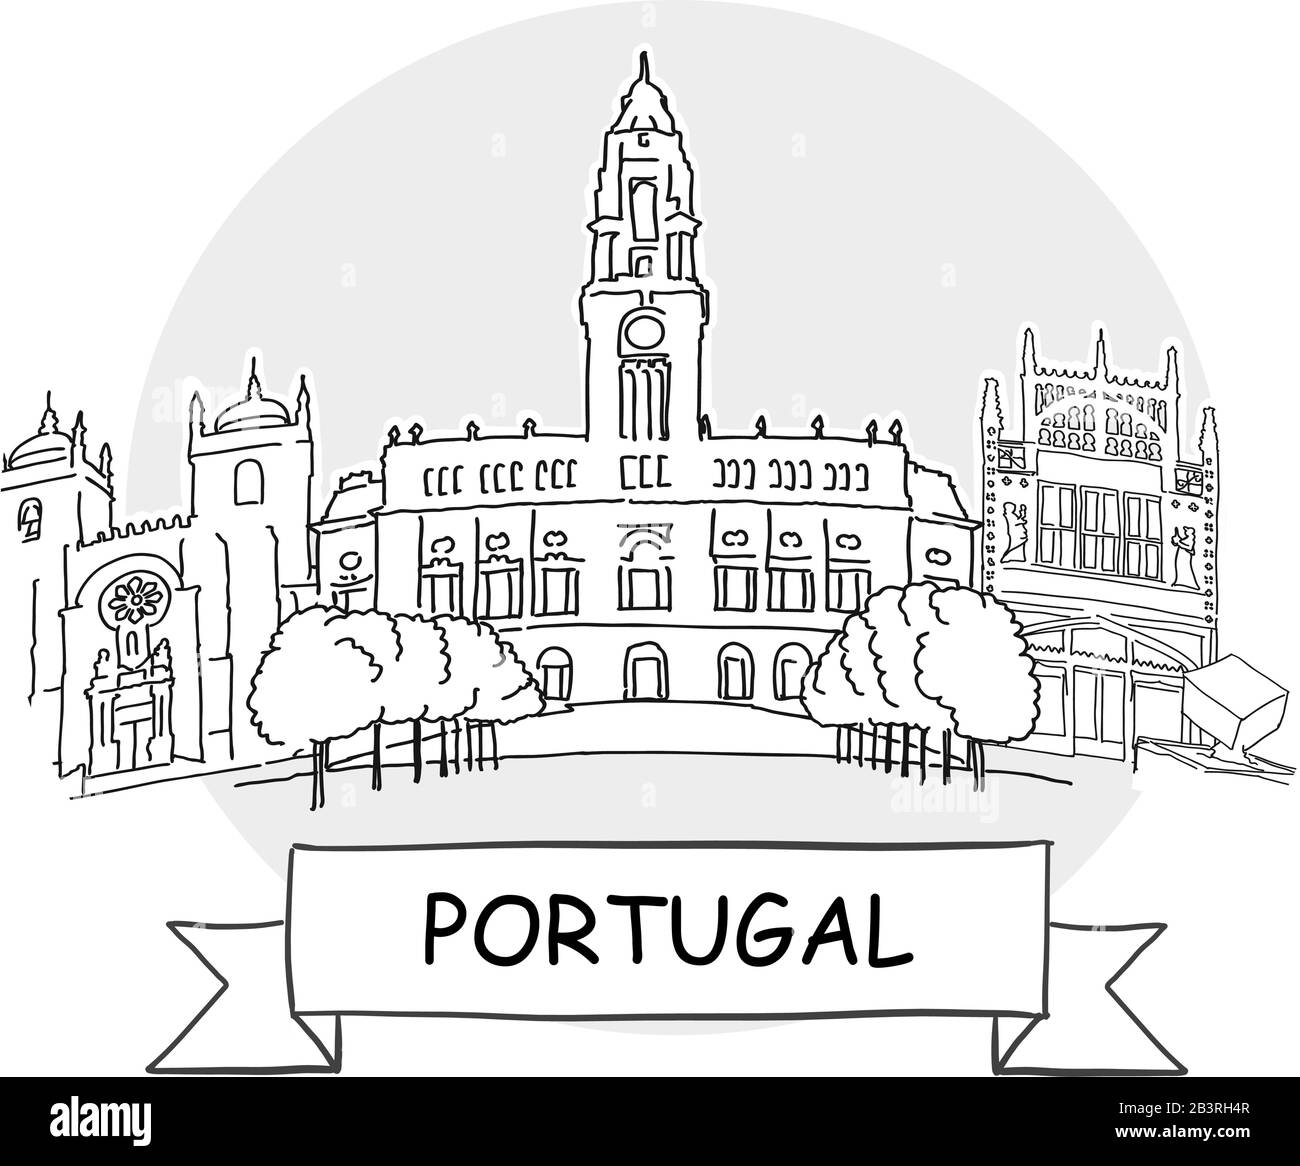 Portugal Signe Vectoriel Urbain Dessiné À La Main. Illustration De L'Art De La Ligne Noire Avec Ruban Et Titre. Illustration de Vecteur